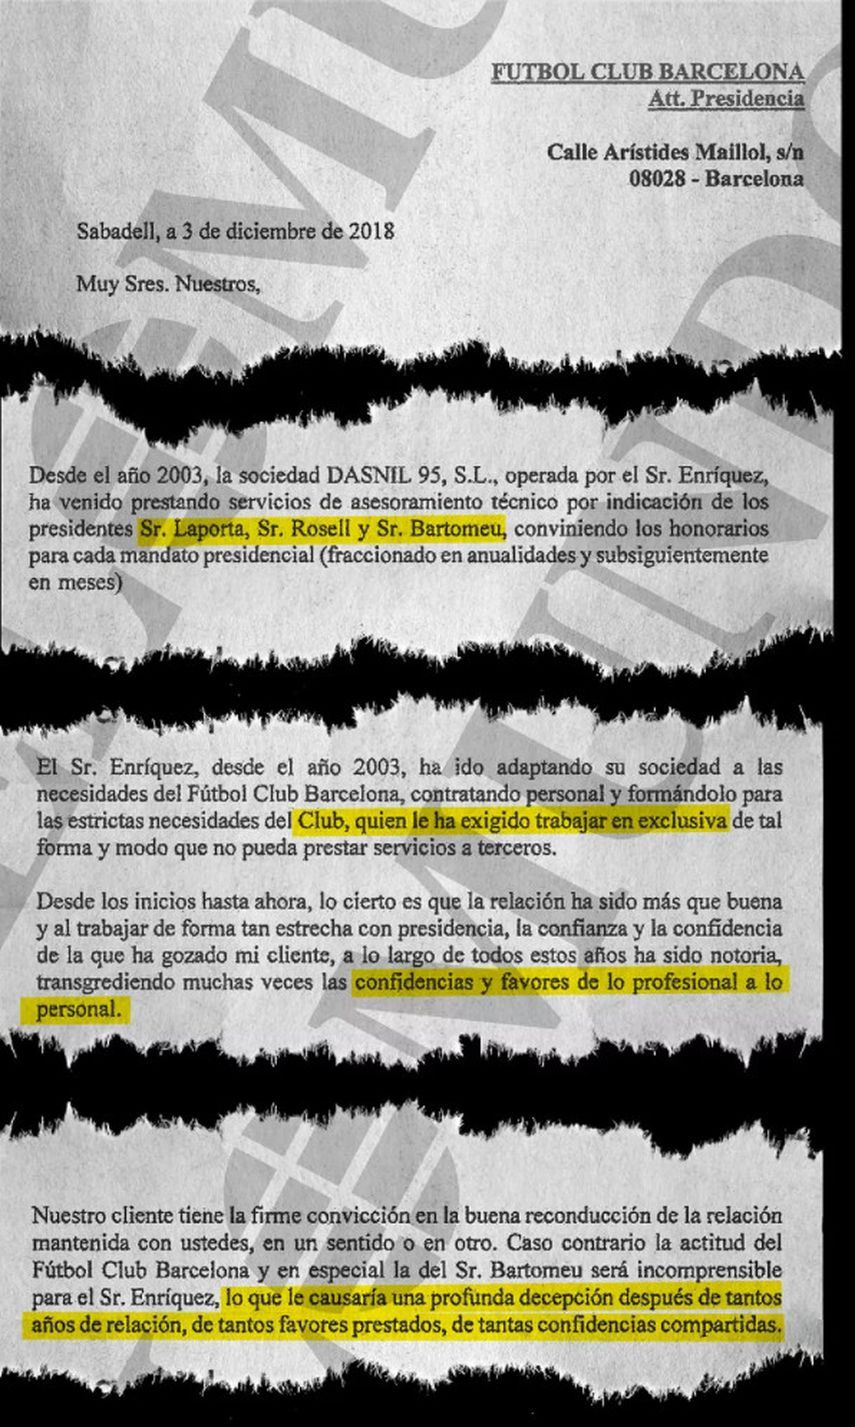 نسخة من الرسالة التي وجّهها الحكم السابق خوسيه ماريا إنريكيز نيغريرا إلى برشلونة